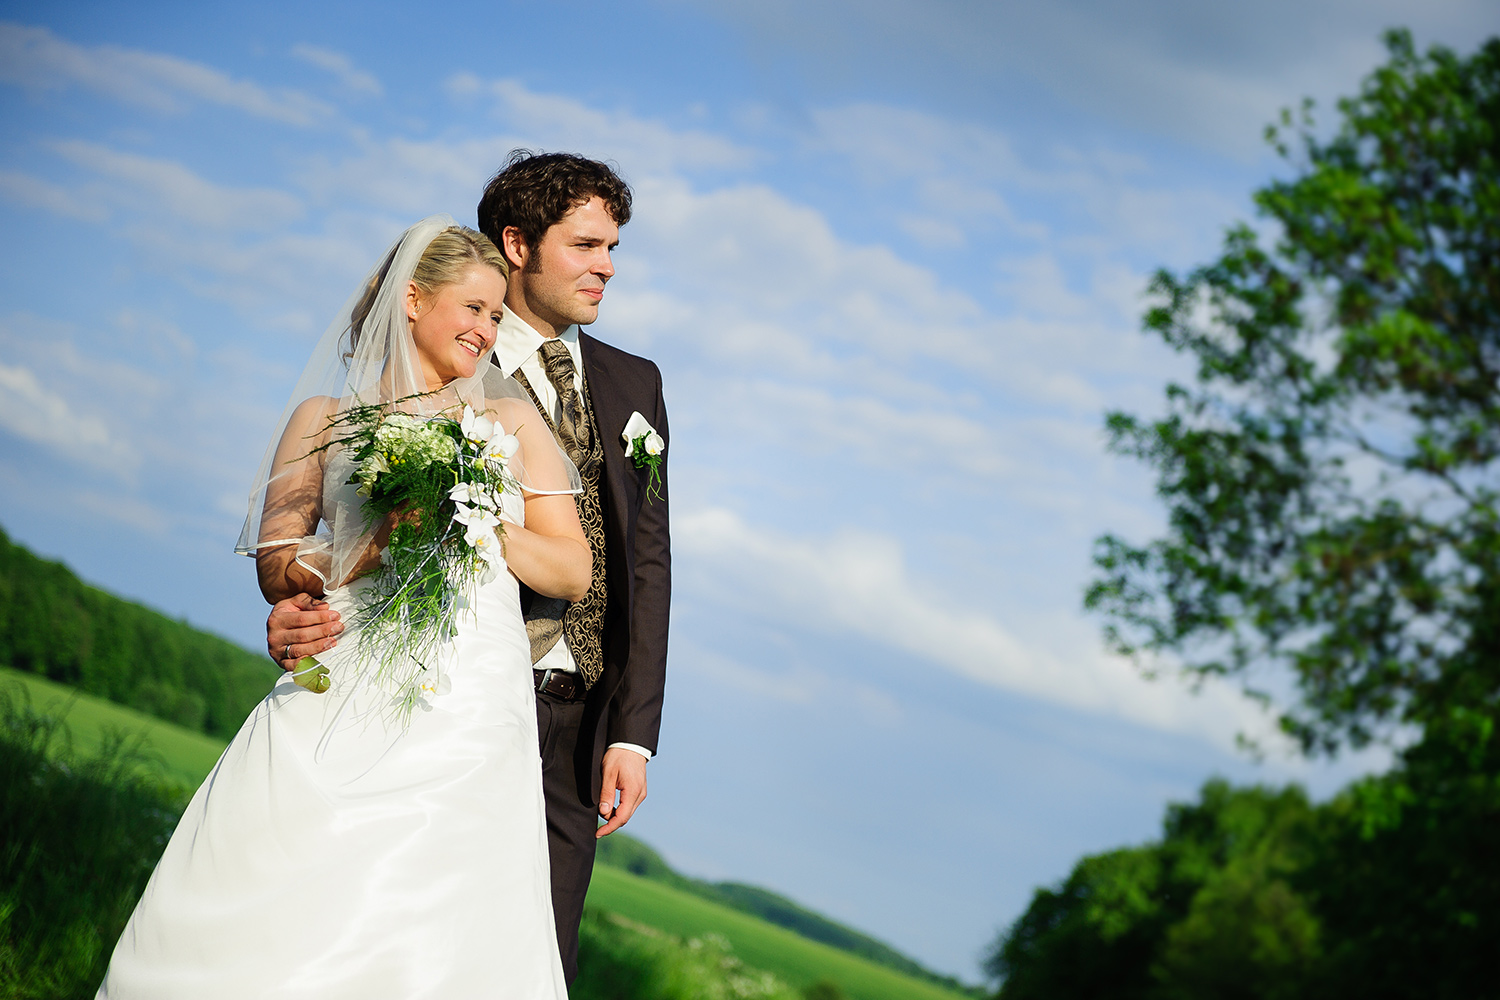 Natürliche Hochzeitsfotografie als Reportage oder Fotodokumentation